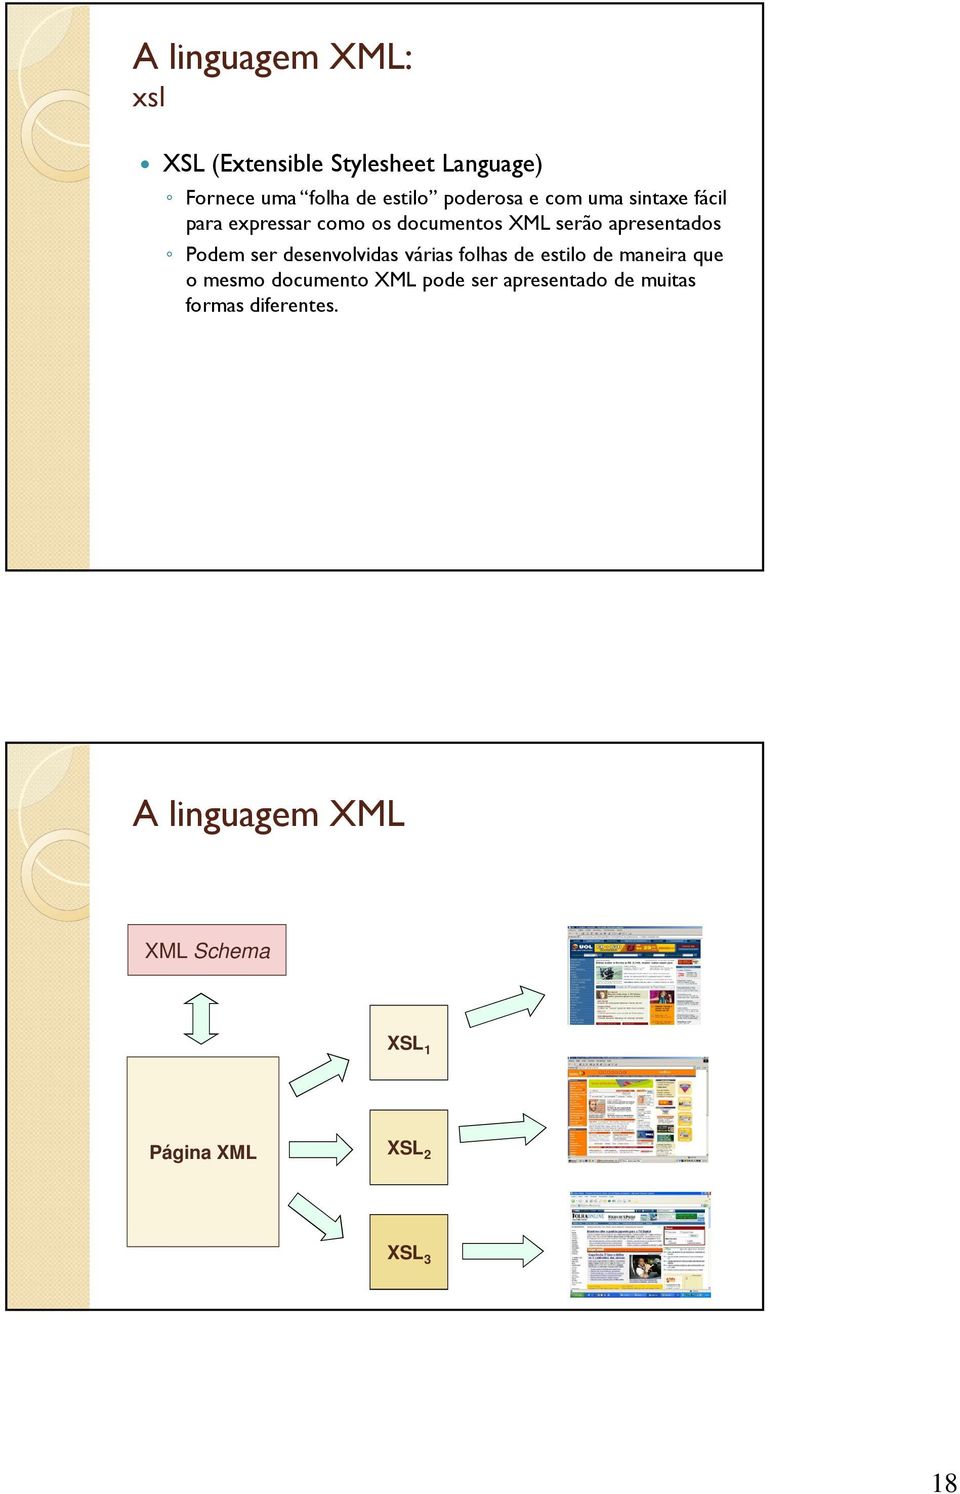 Podem ser desenvolvidas várias folhas de estilo de maneira que o mesmo documento XML pode